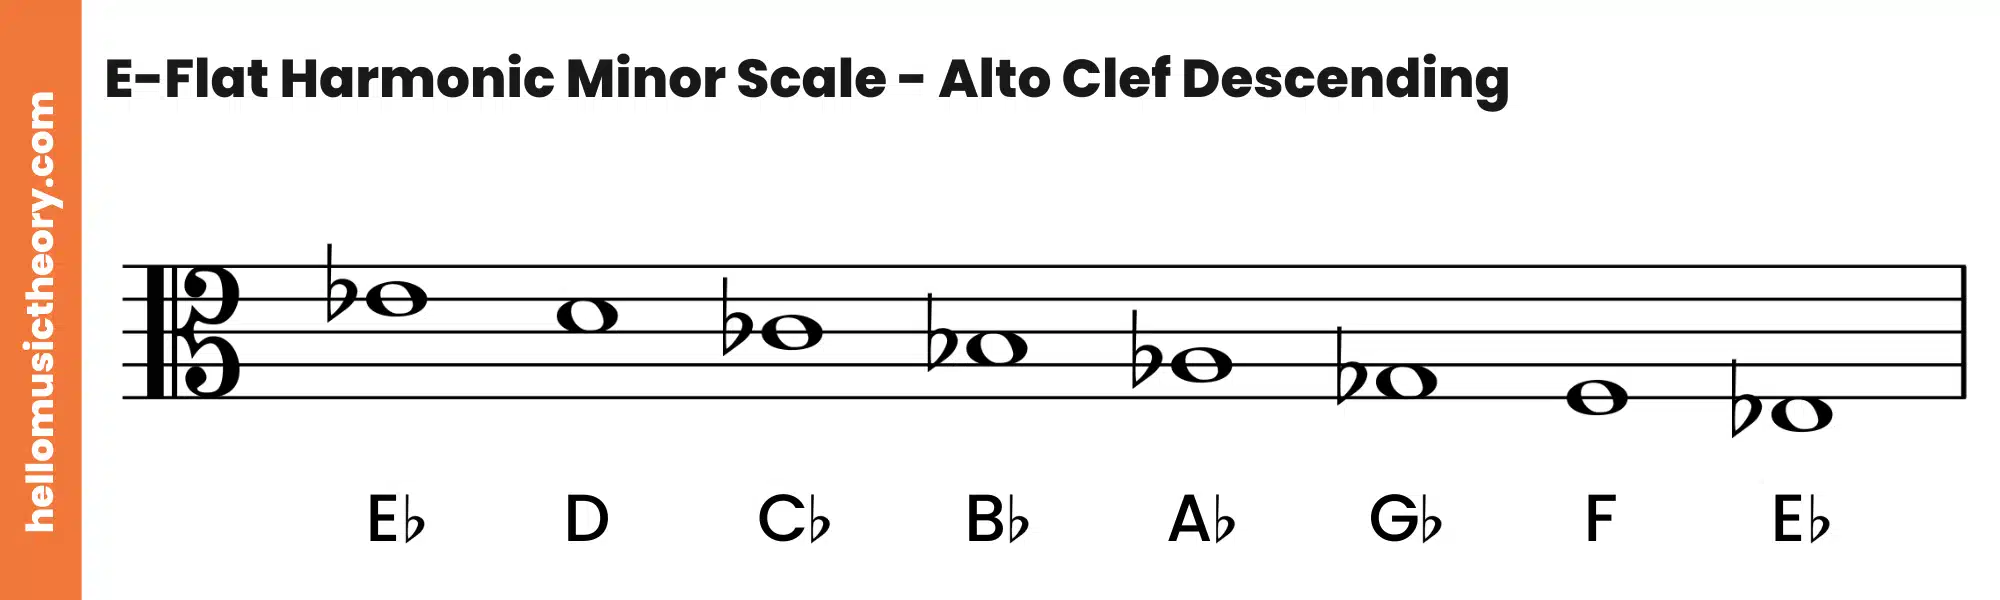 E-Flat Harmonic Minor Scale Alto Clef Descending